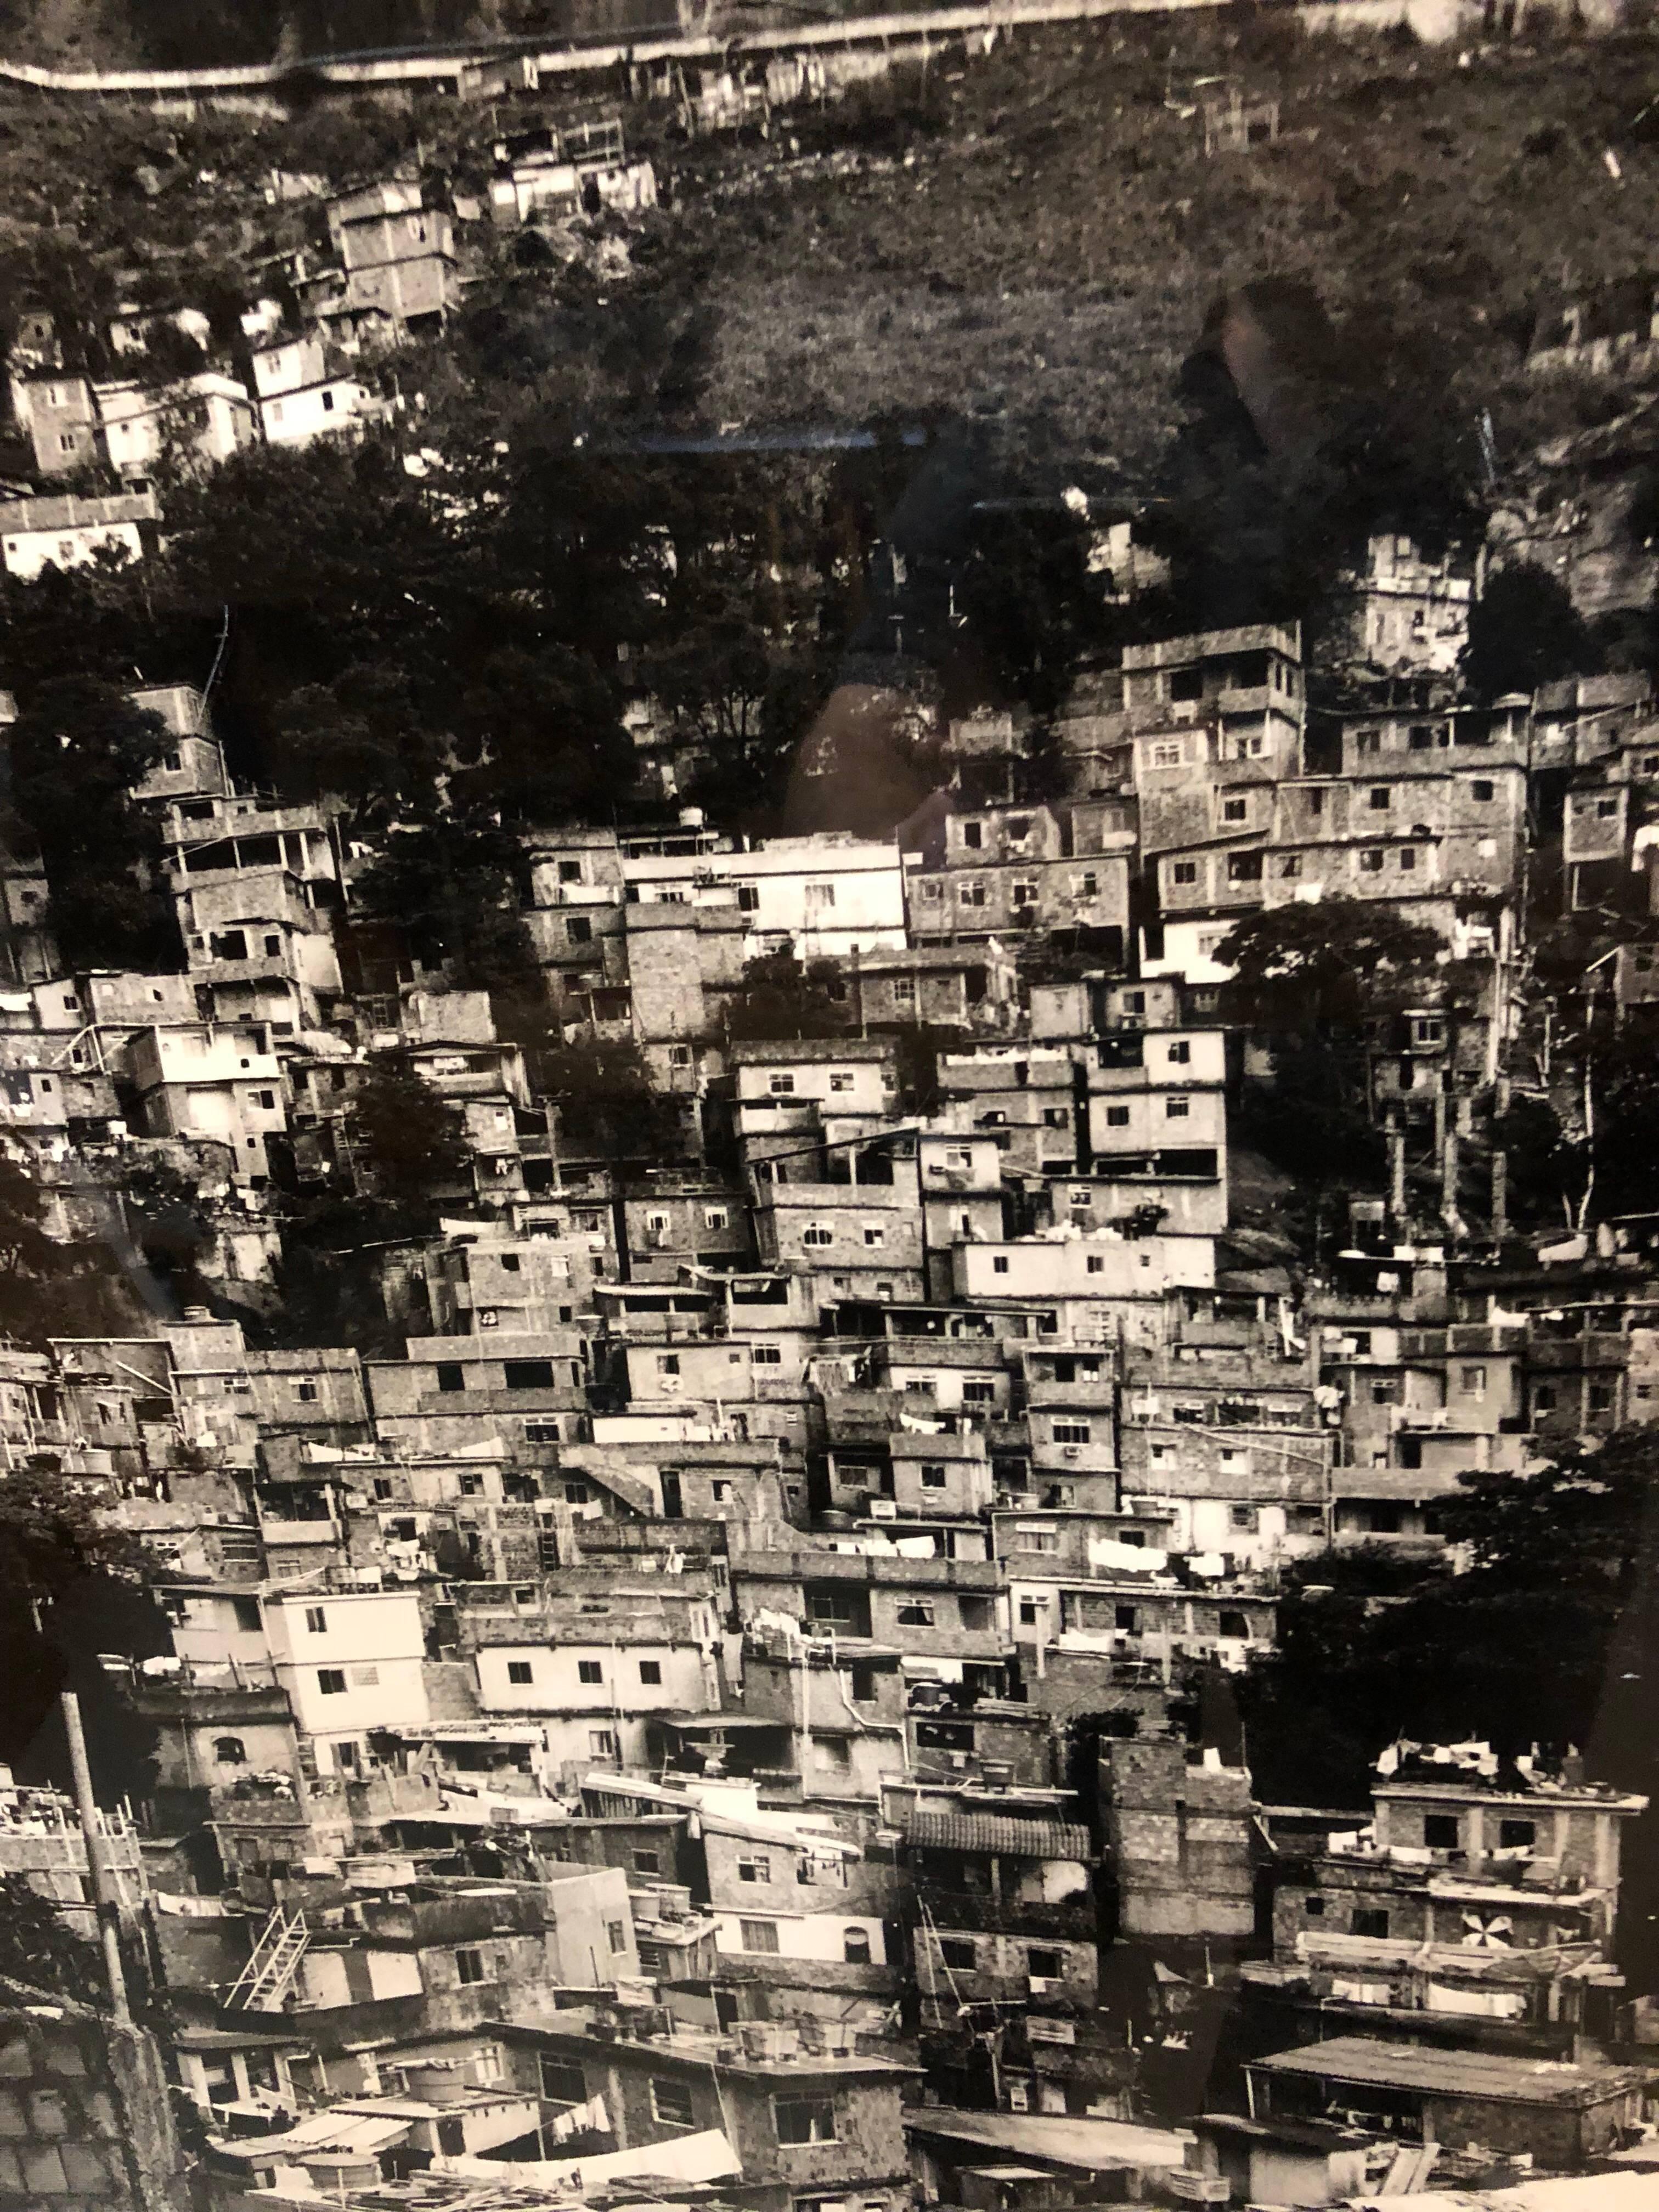 Großformatige brasilianische Favela-Stadtlandschaft aus Silber mit Gelatinesilber-Druck Rio de Janeiro (Konstruktivismus), Photograph, von Paul Rowland